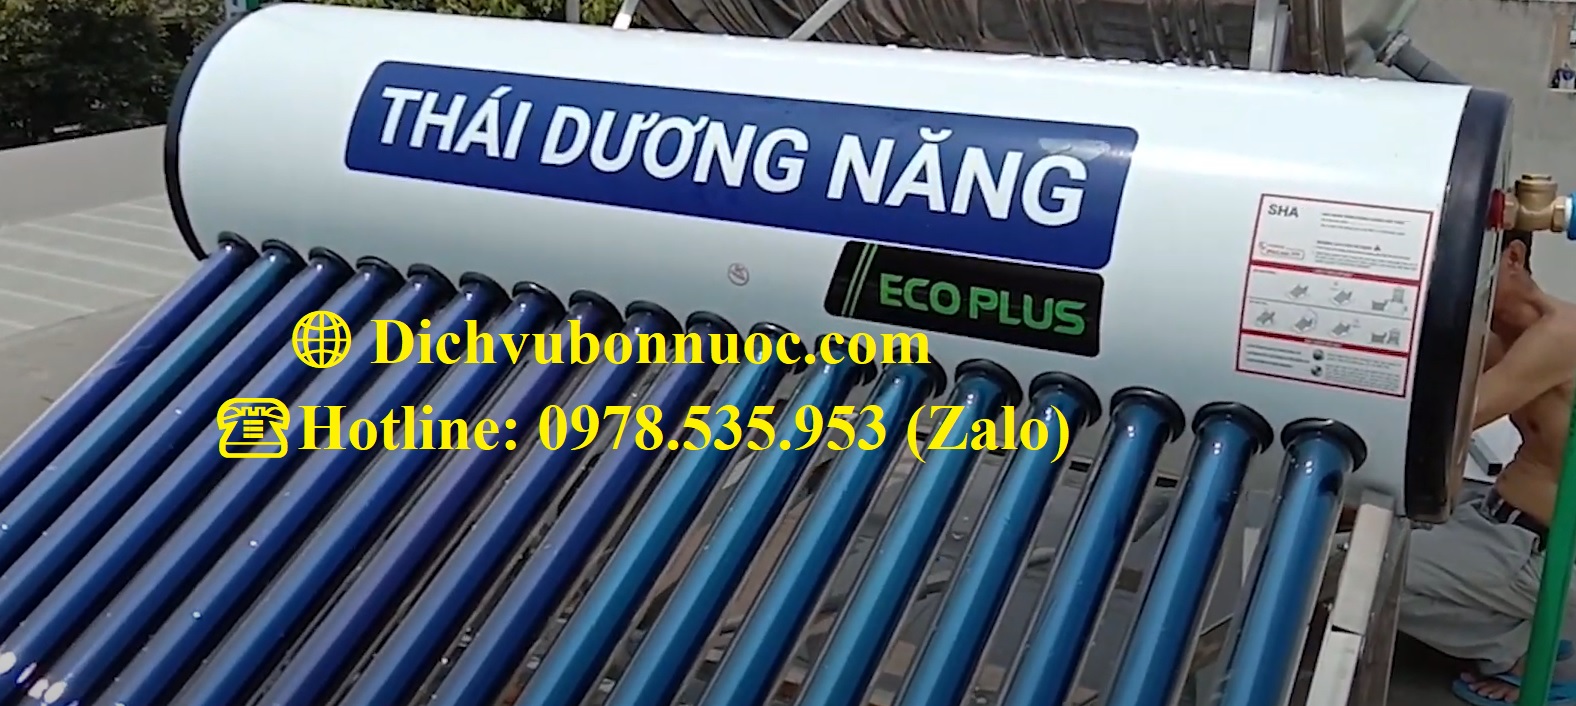 Máy nước nóng Thái Dương Năng Sơn Hà 120L Eco